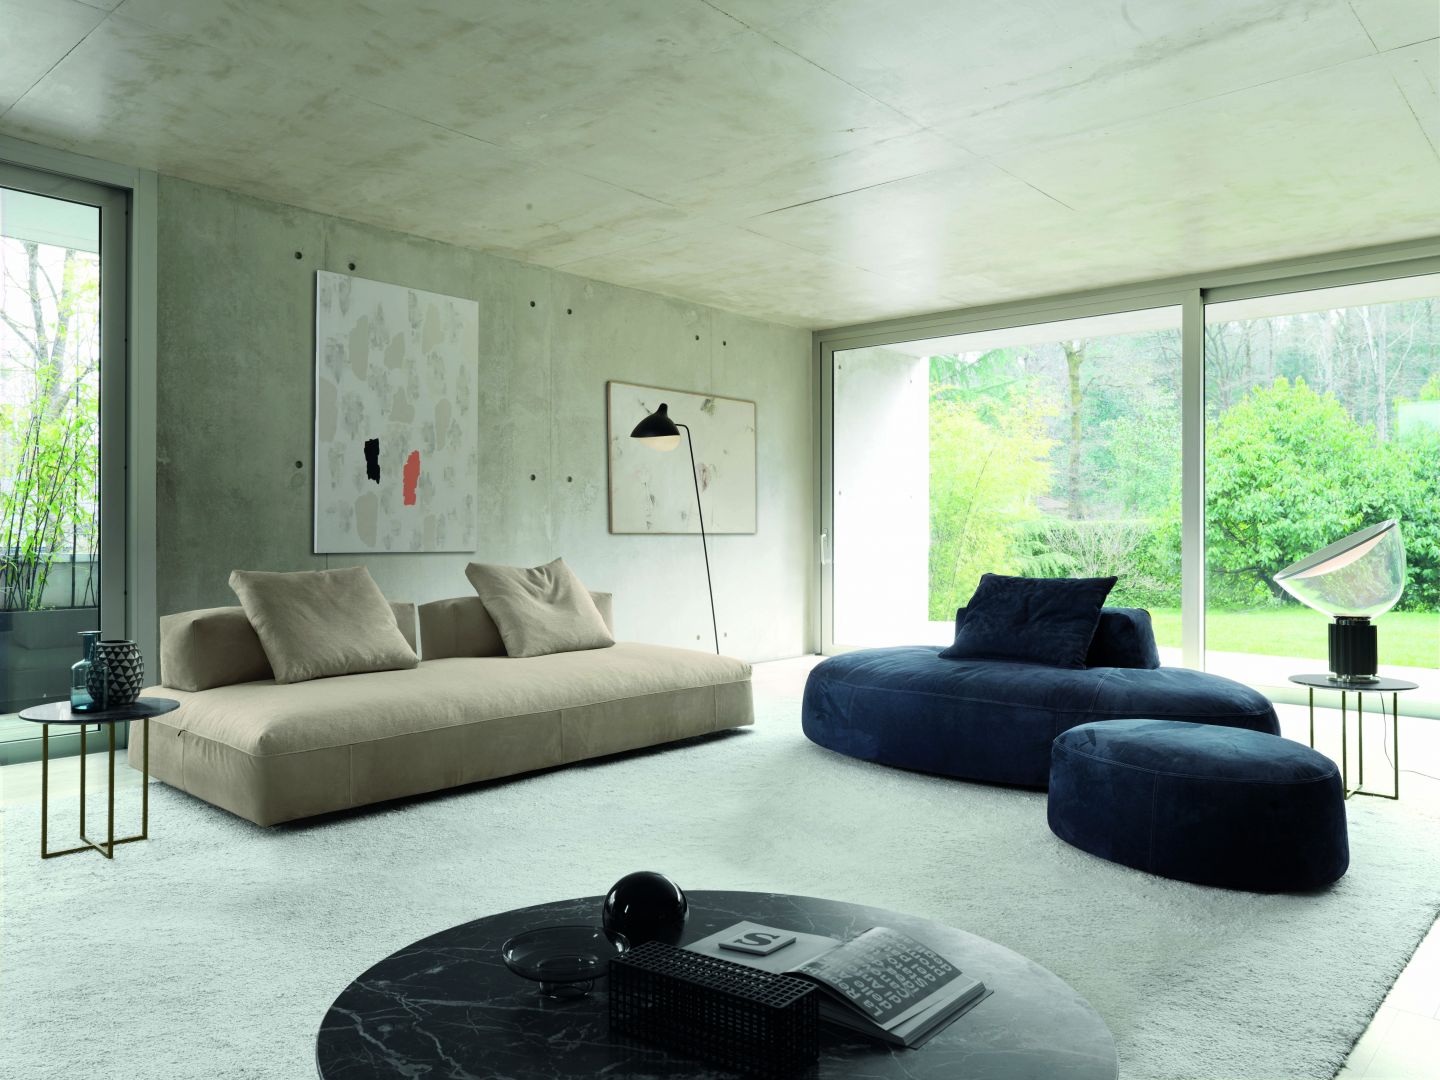 Milos to sofa o niespotykanym kształcie, określana przez producenta jako 